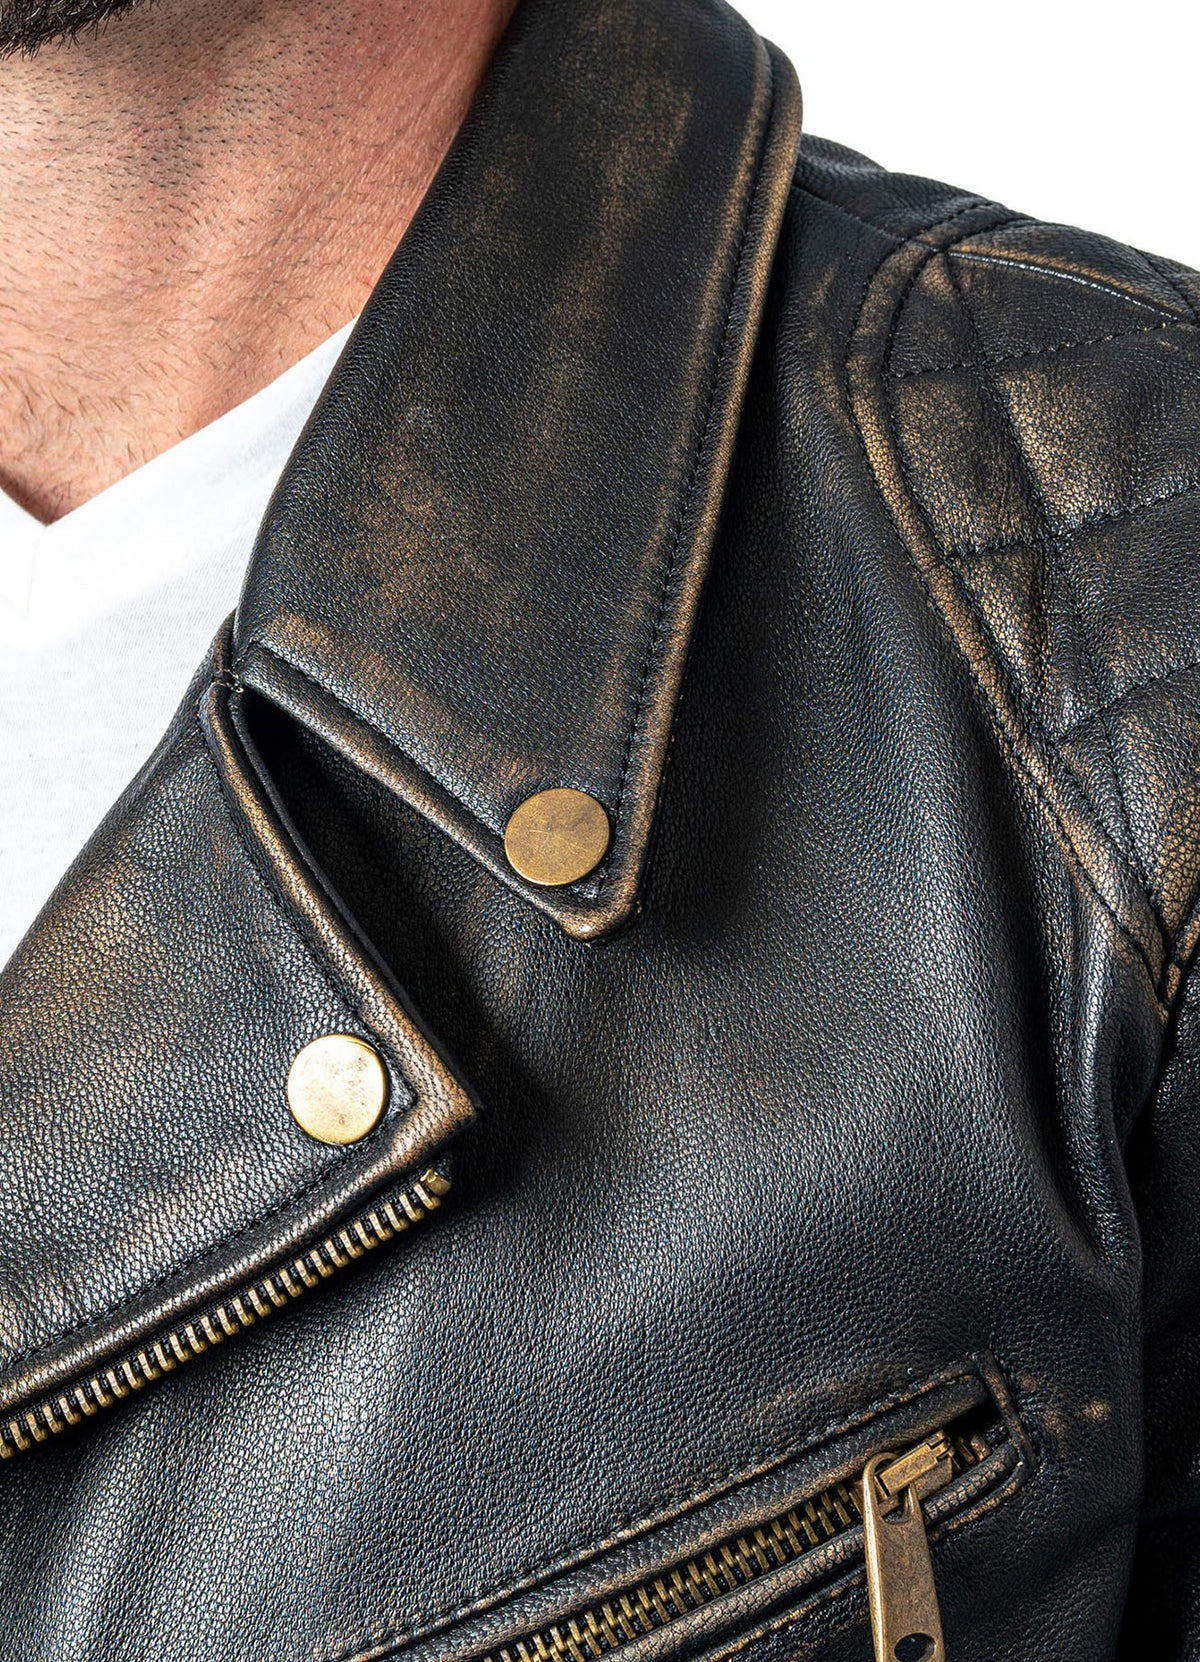 Mens Distressed Black Biker Leather Jacket | Shop Now!